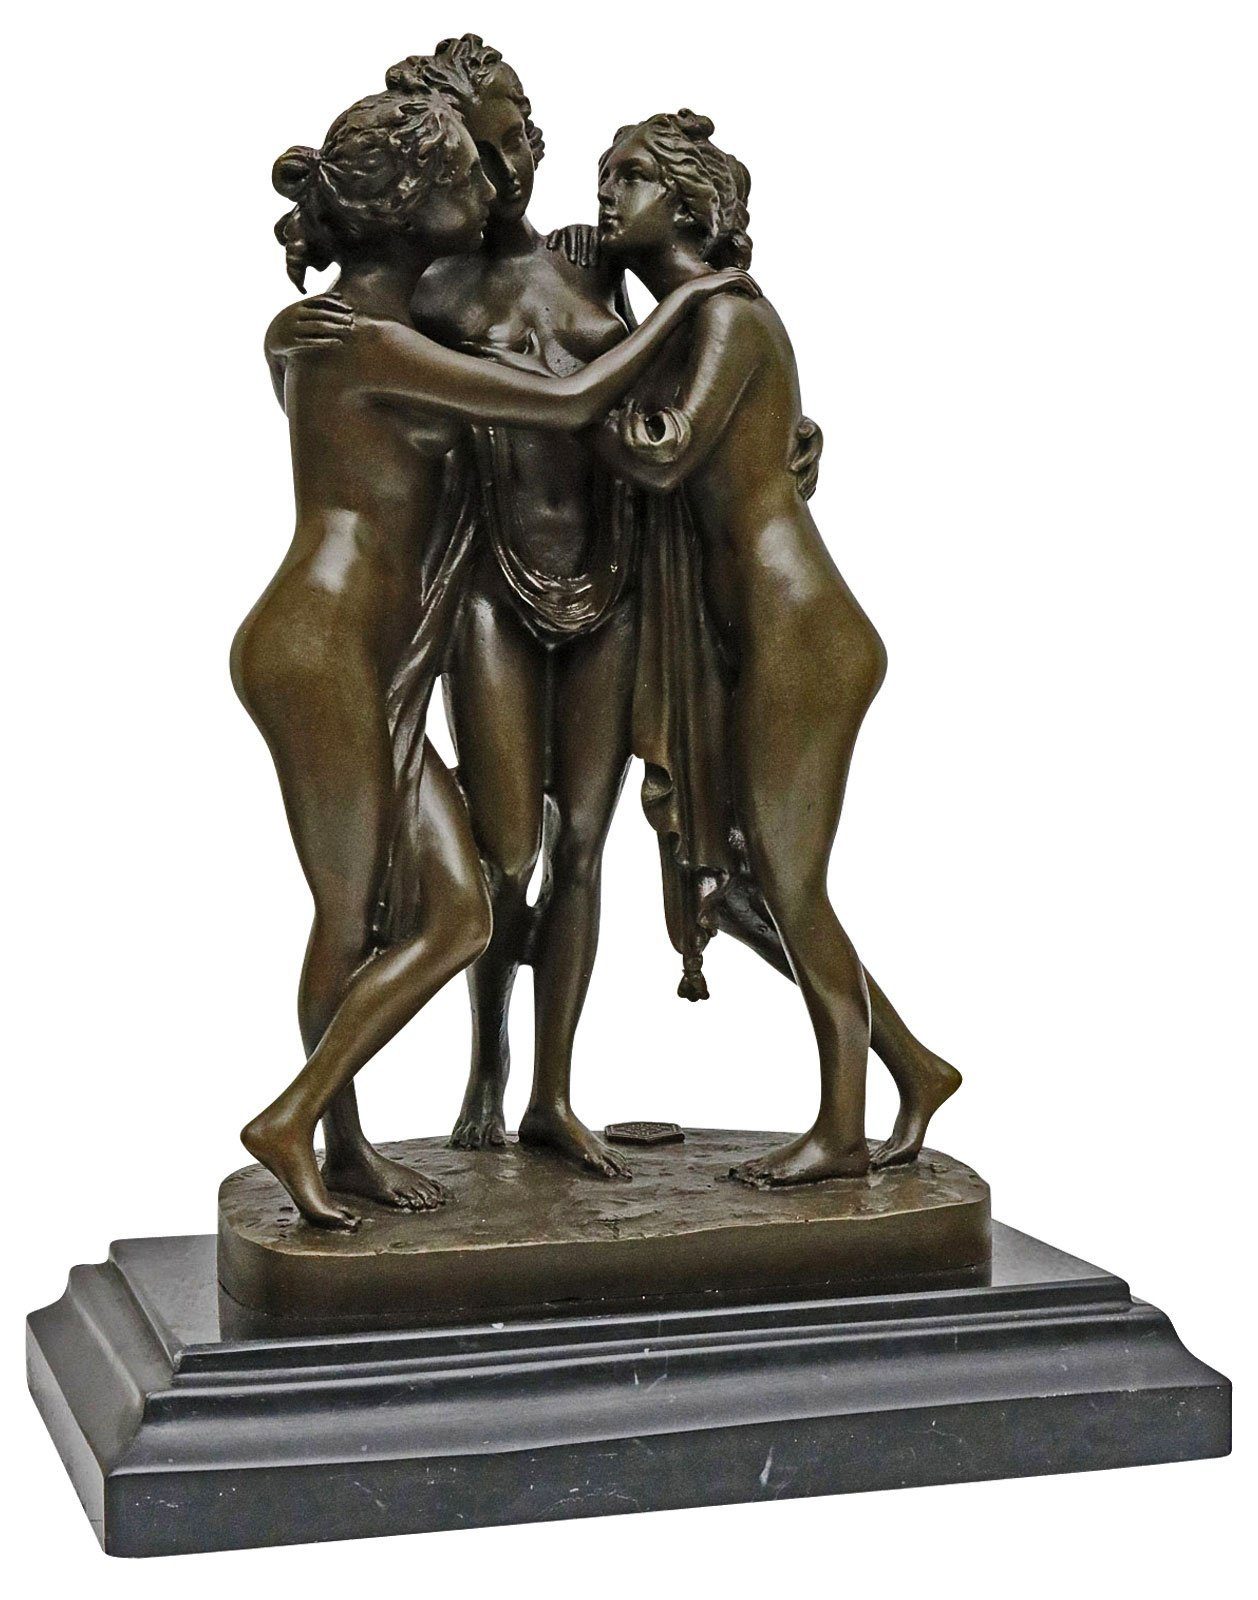 Aubaho Skulptur Bronzeskulptur nach drei Bro Grazien erotische Canova Kunst Antik-Stil